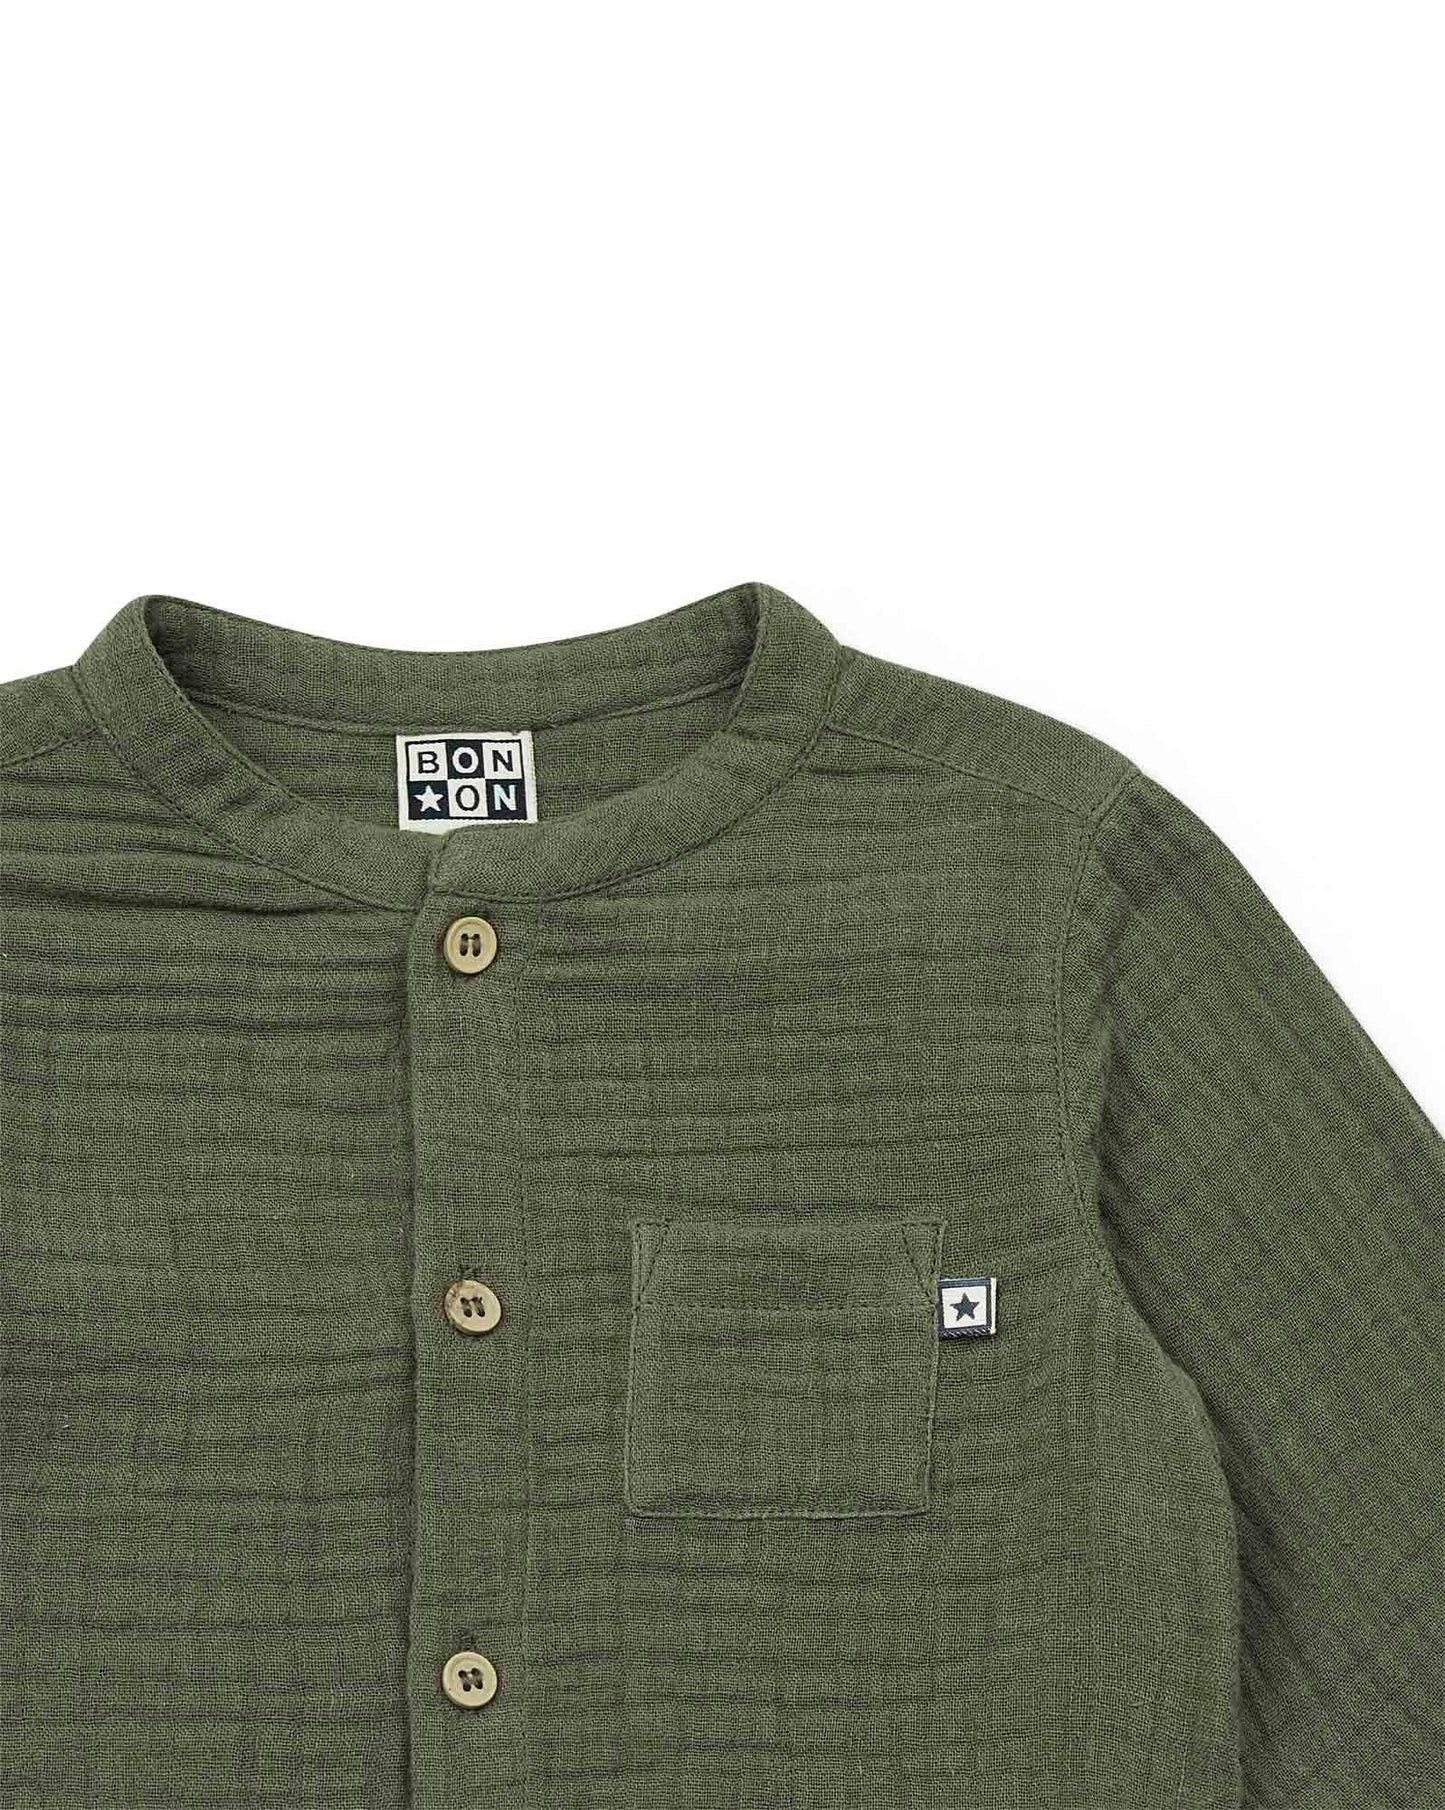 Shirt Inter green Baby In 100% organic cotton gauze certified GOTS